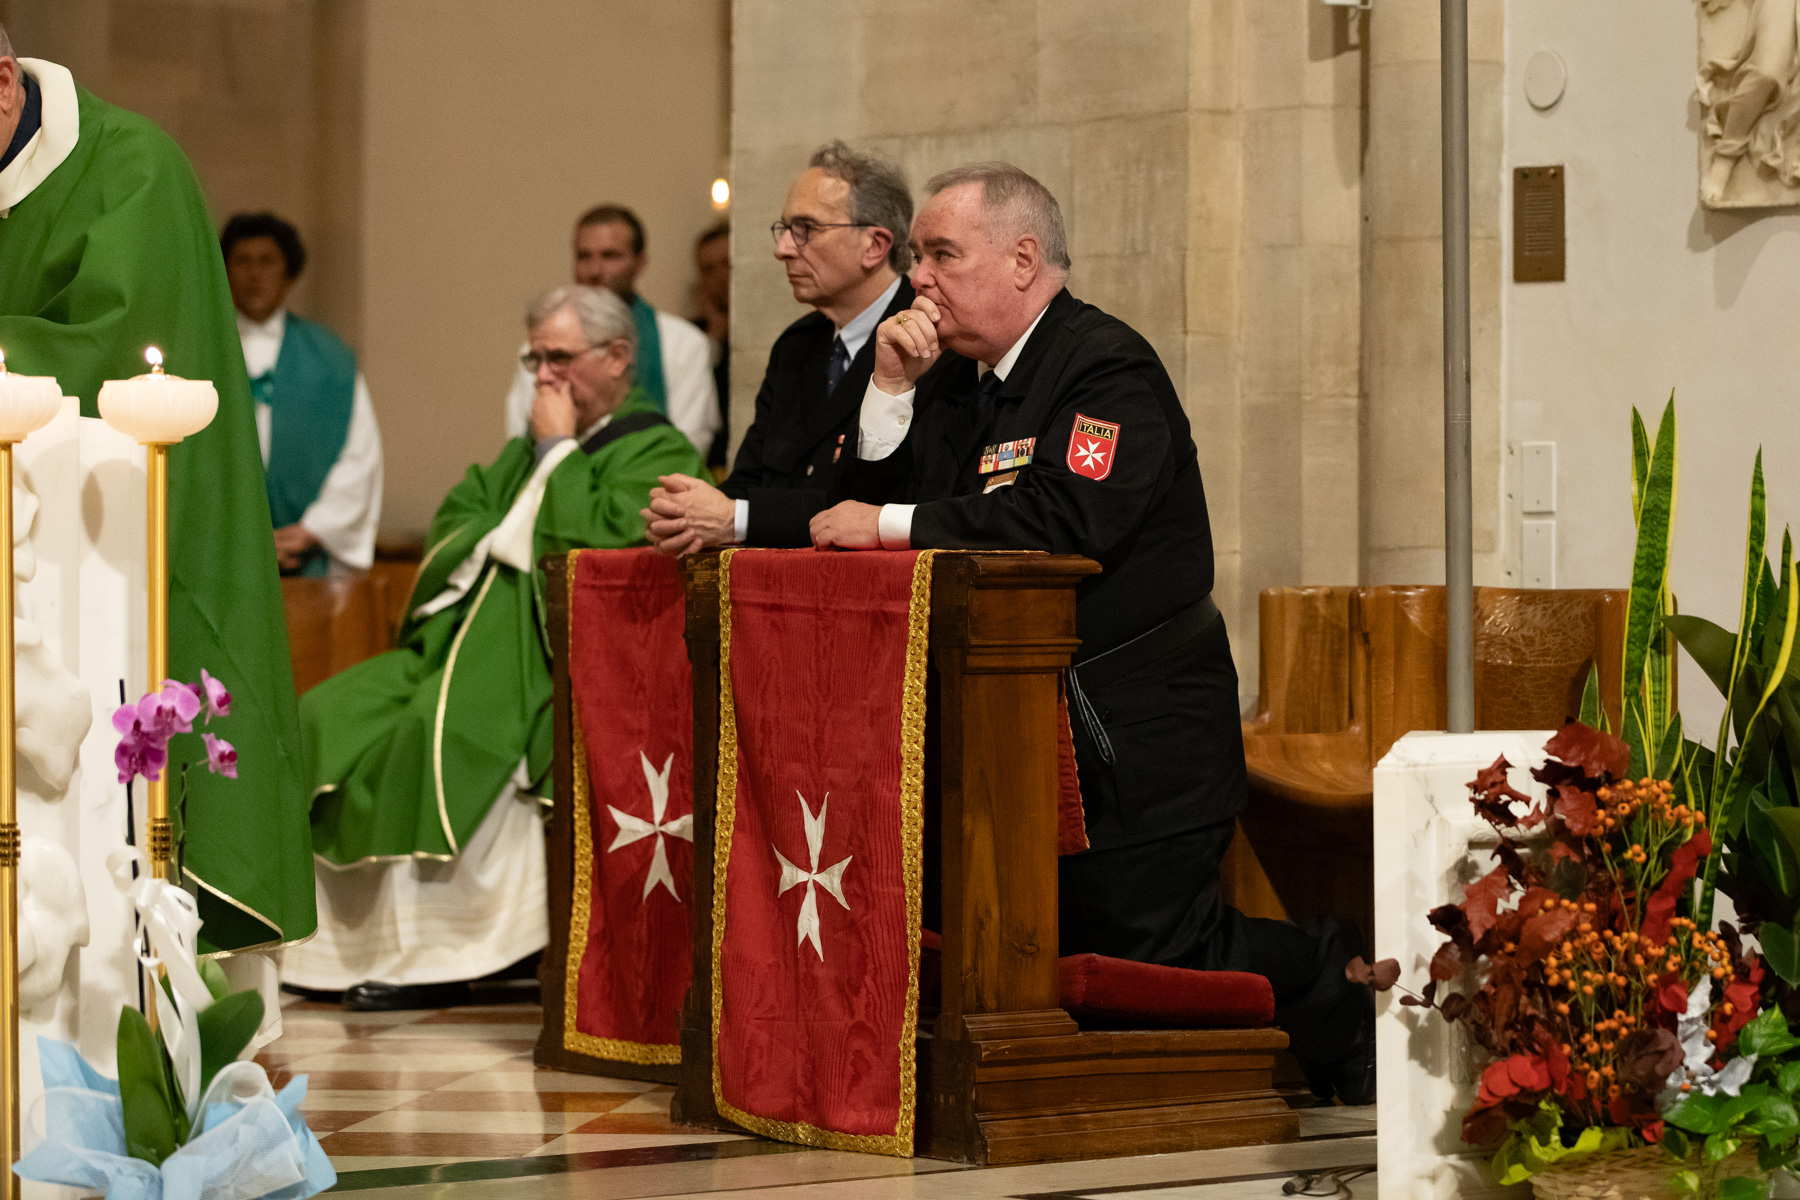 À Lorette, le traditionnel pèlerinage des trois Grands Prieurés italiens de l’Ordre de Malte